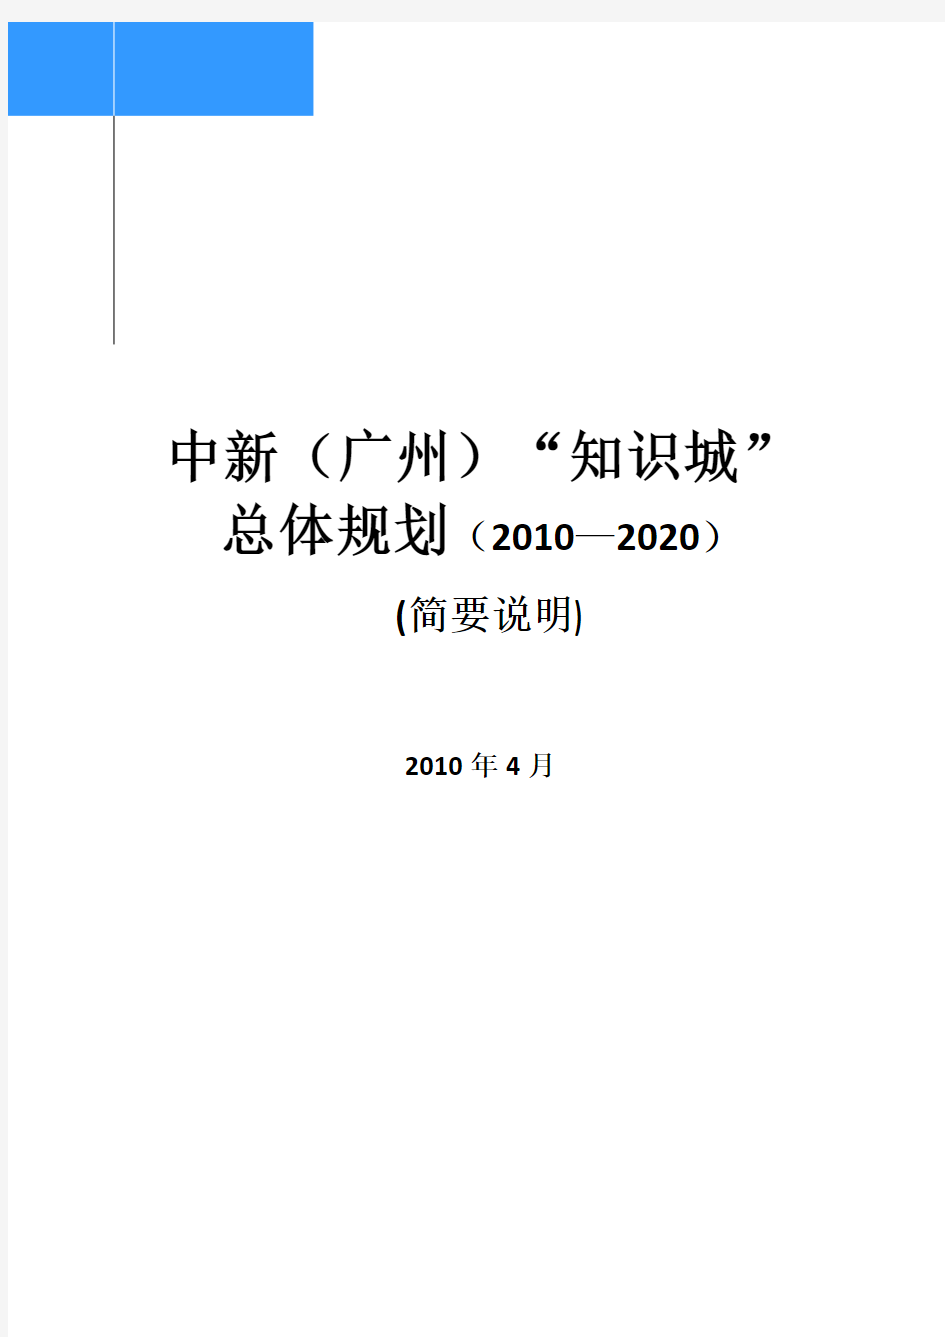 广州中新知识城总体规划2011